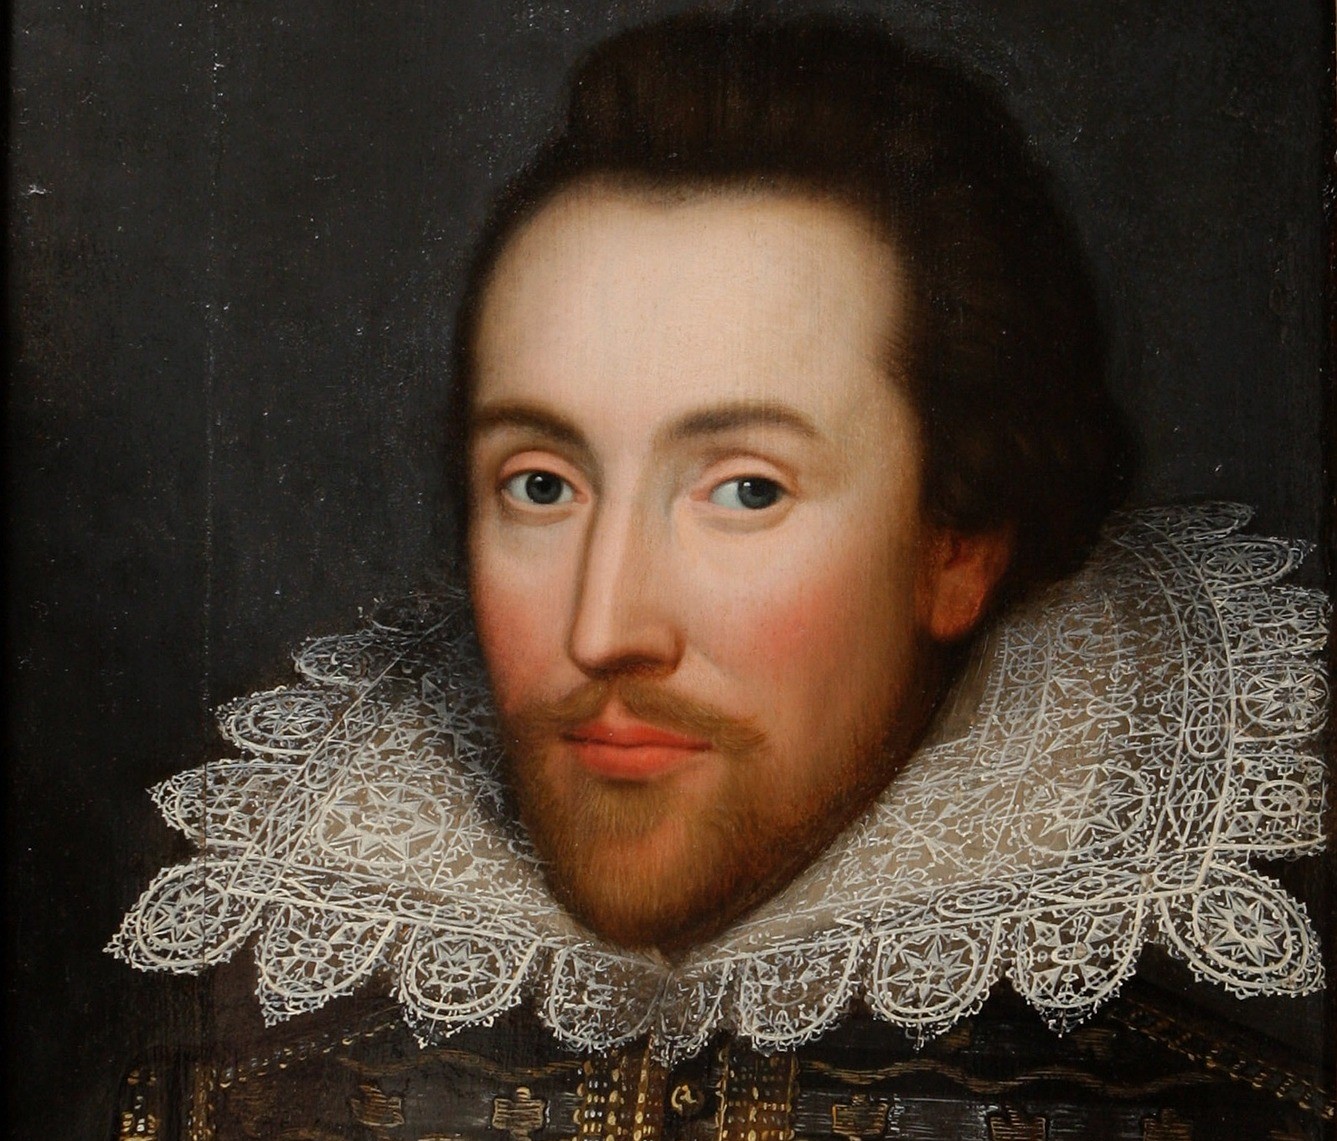 Shakespeare, in vendita per 10 milioni sterline unico ritratto realizzato -  QdS